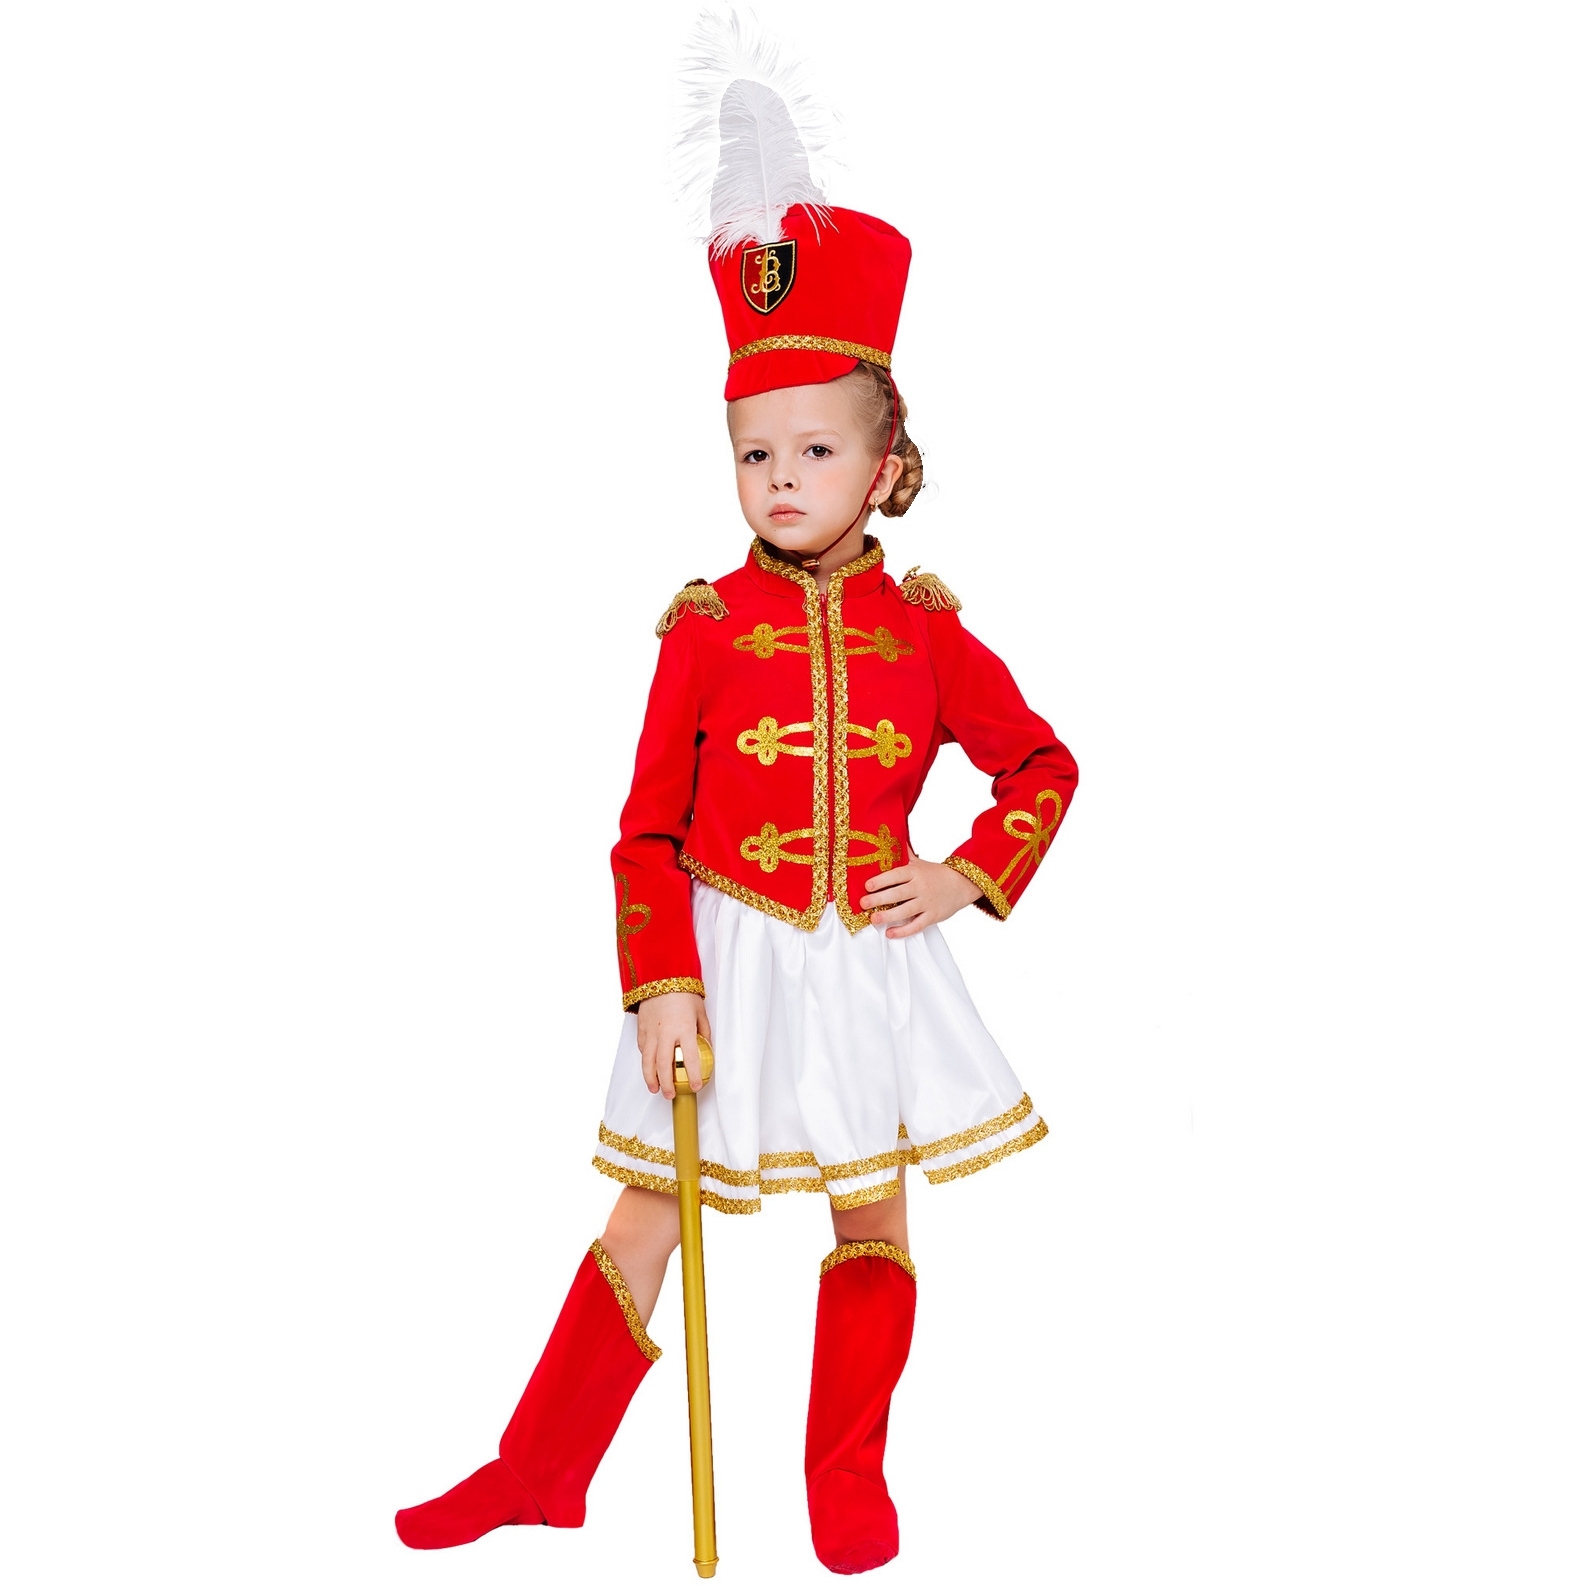 Карнавальный костюм "Мажоретка" (мундир, юбка, кивер, сапоги, трость) размер 122-64